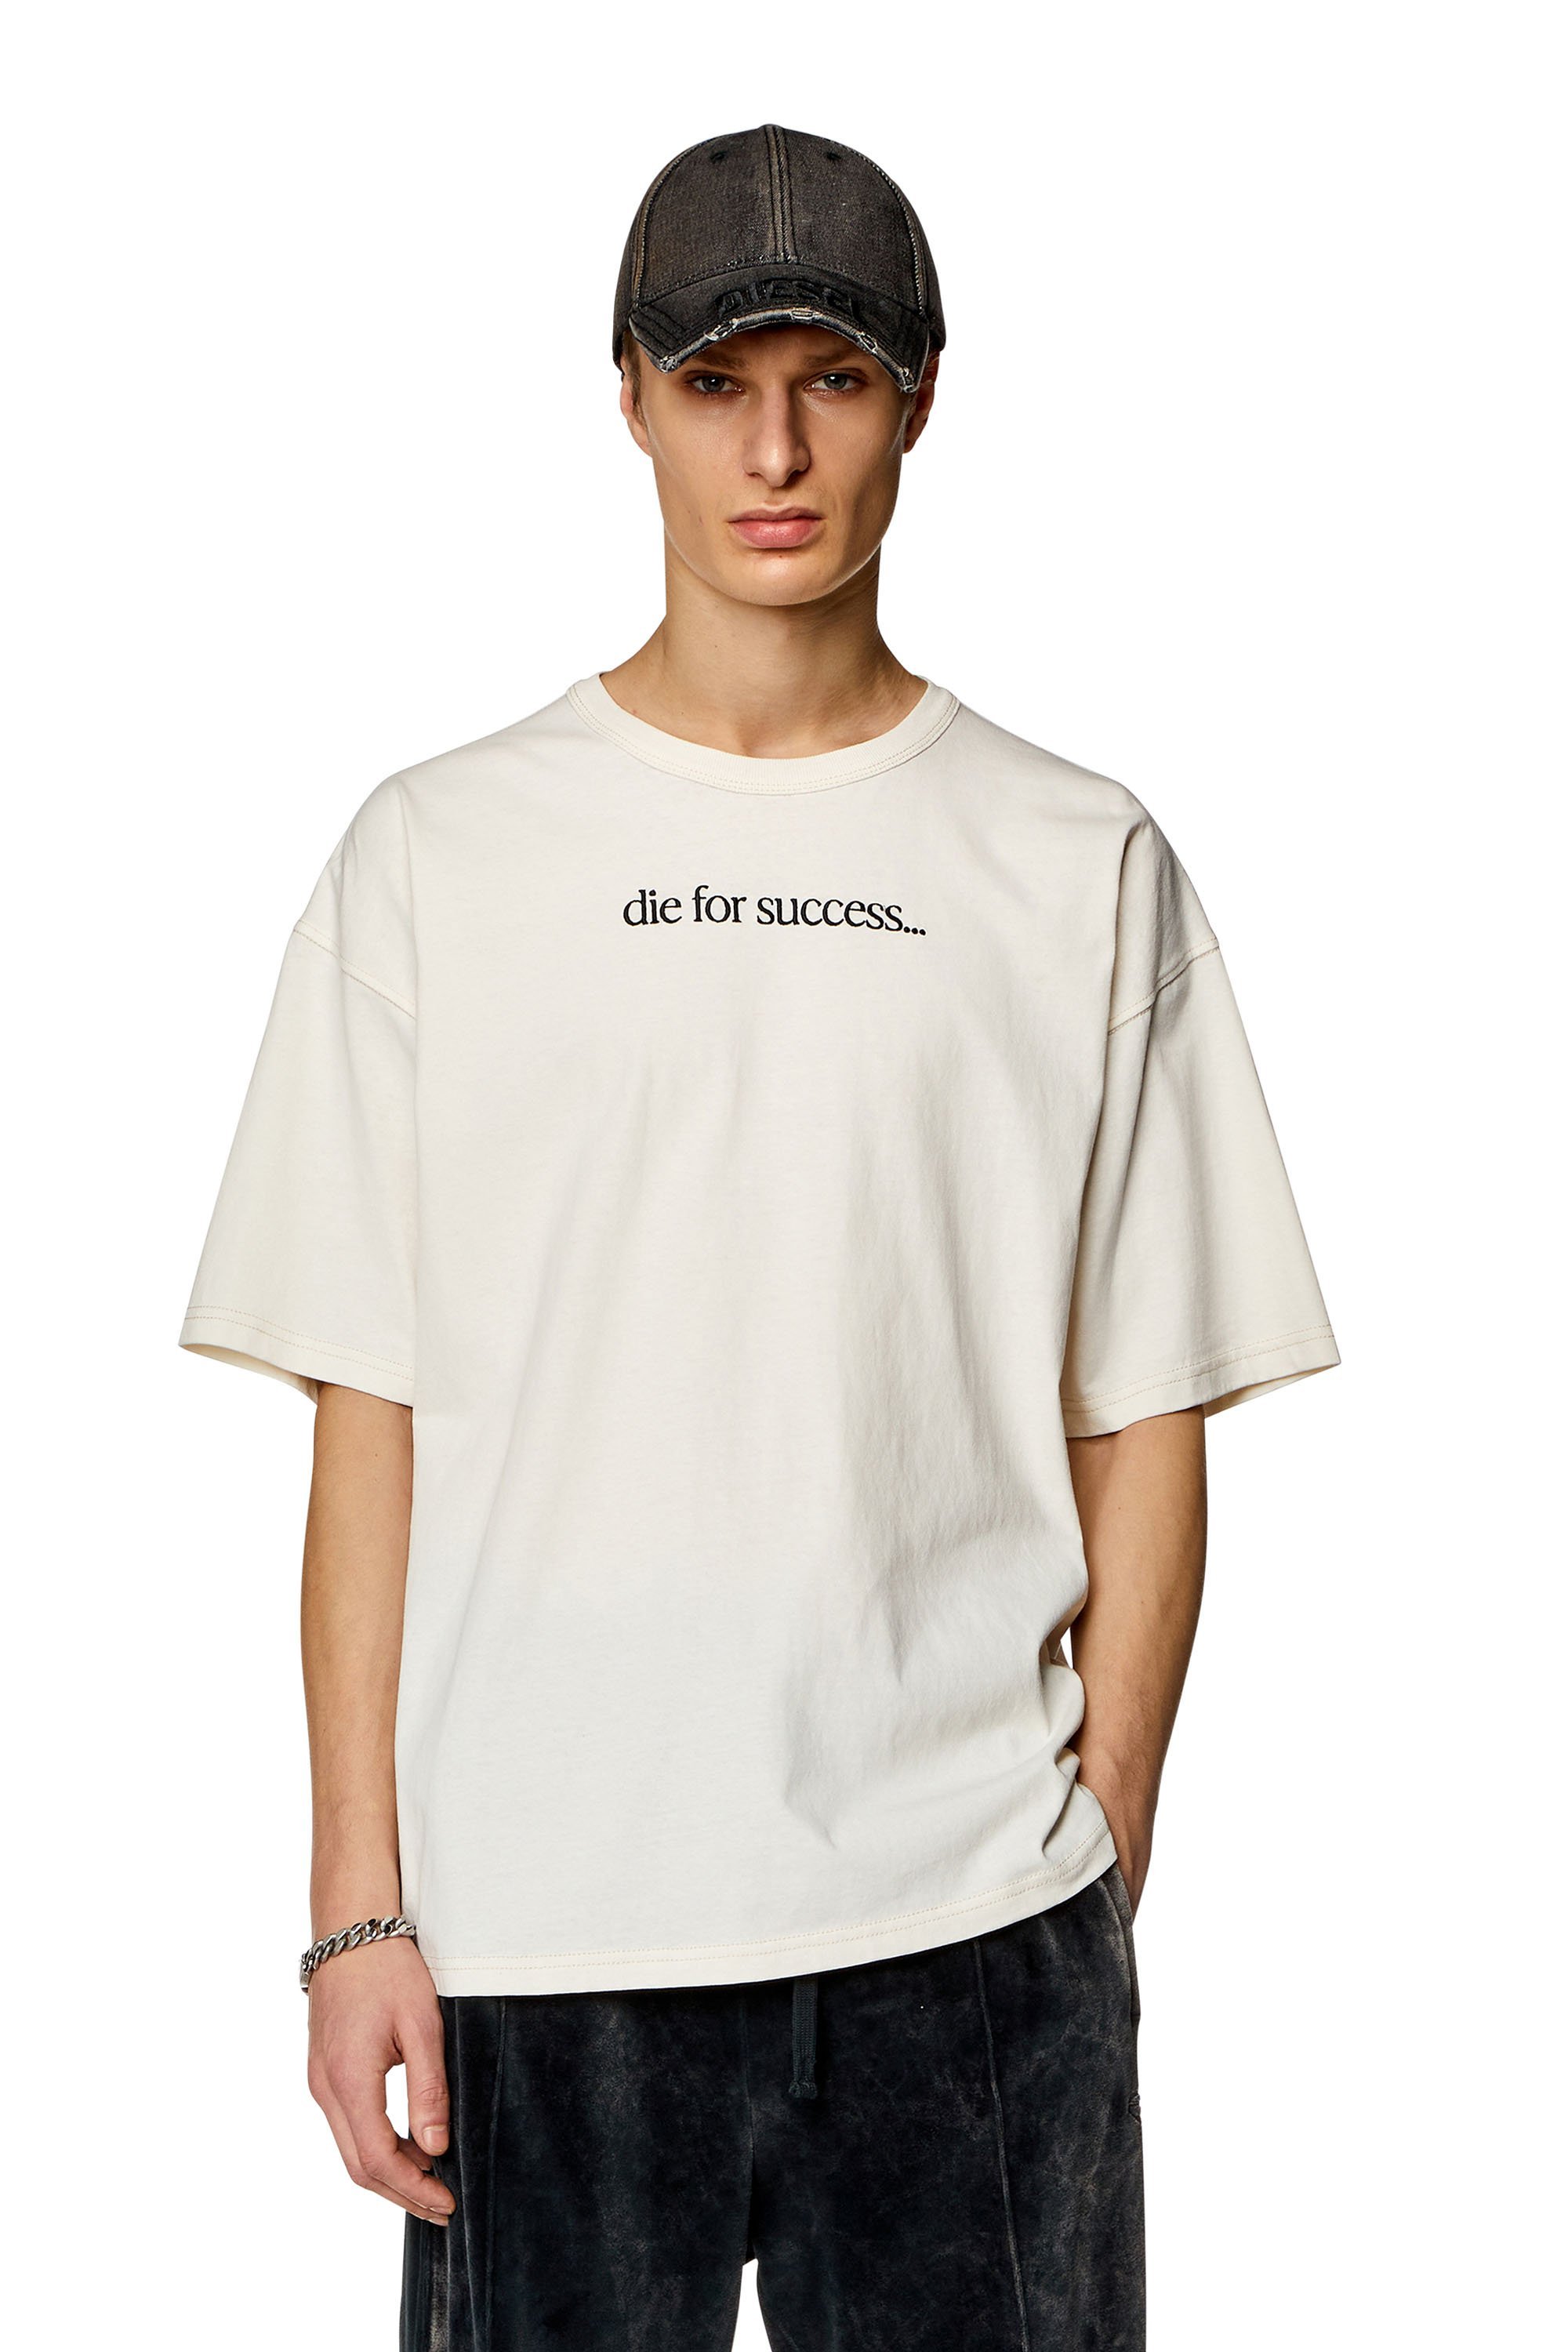 ディーゼル DIESEL メンズ Tシャツ T-BOXT-N6 ディーゼル トップス カットソー・Tシャツ ホワイト ブラック【送料無料】